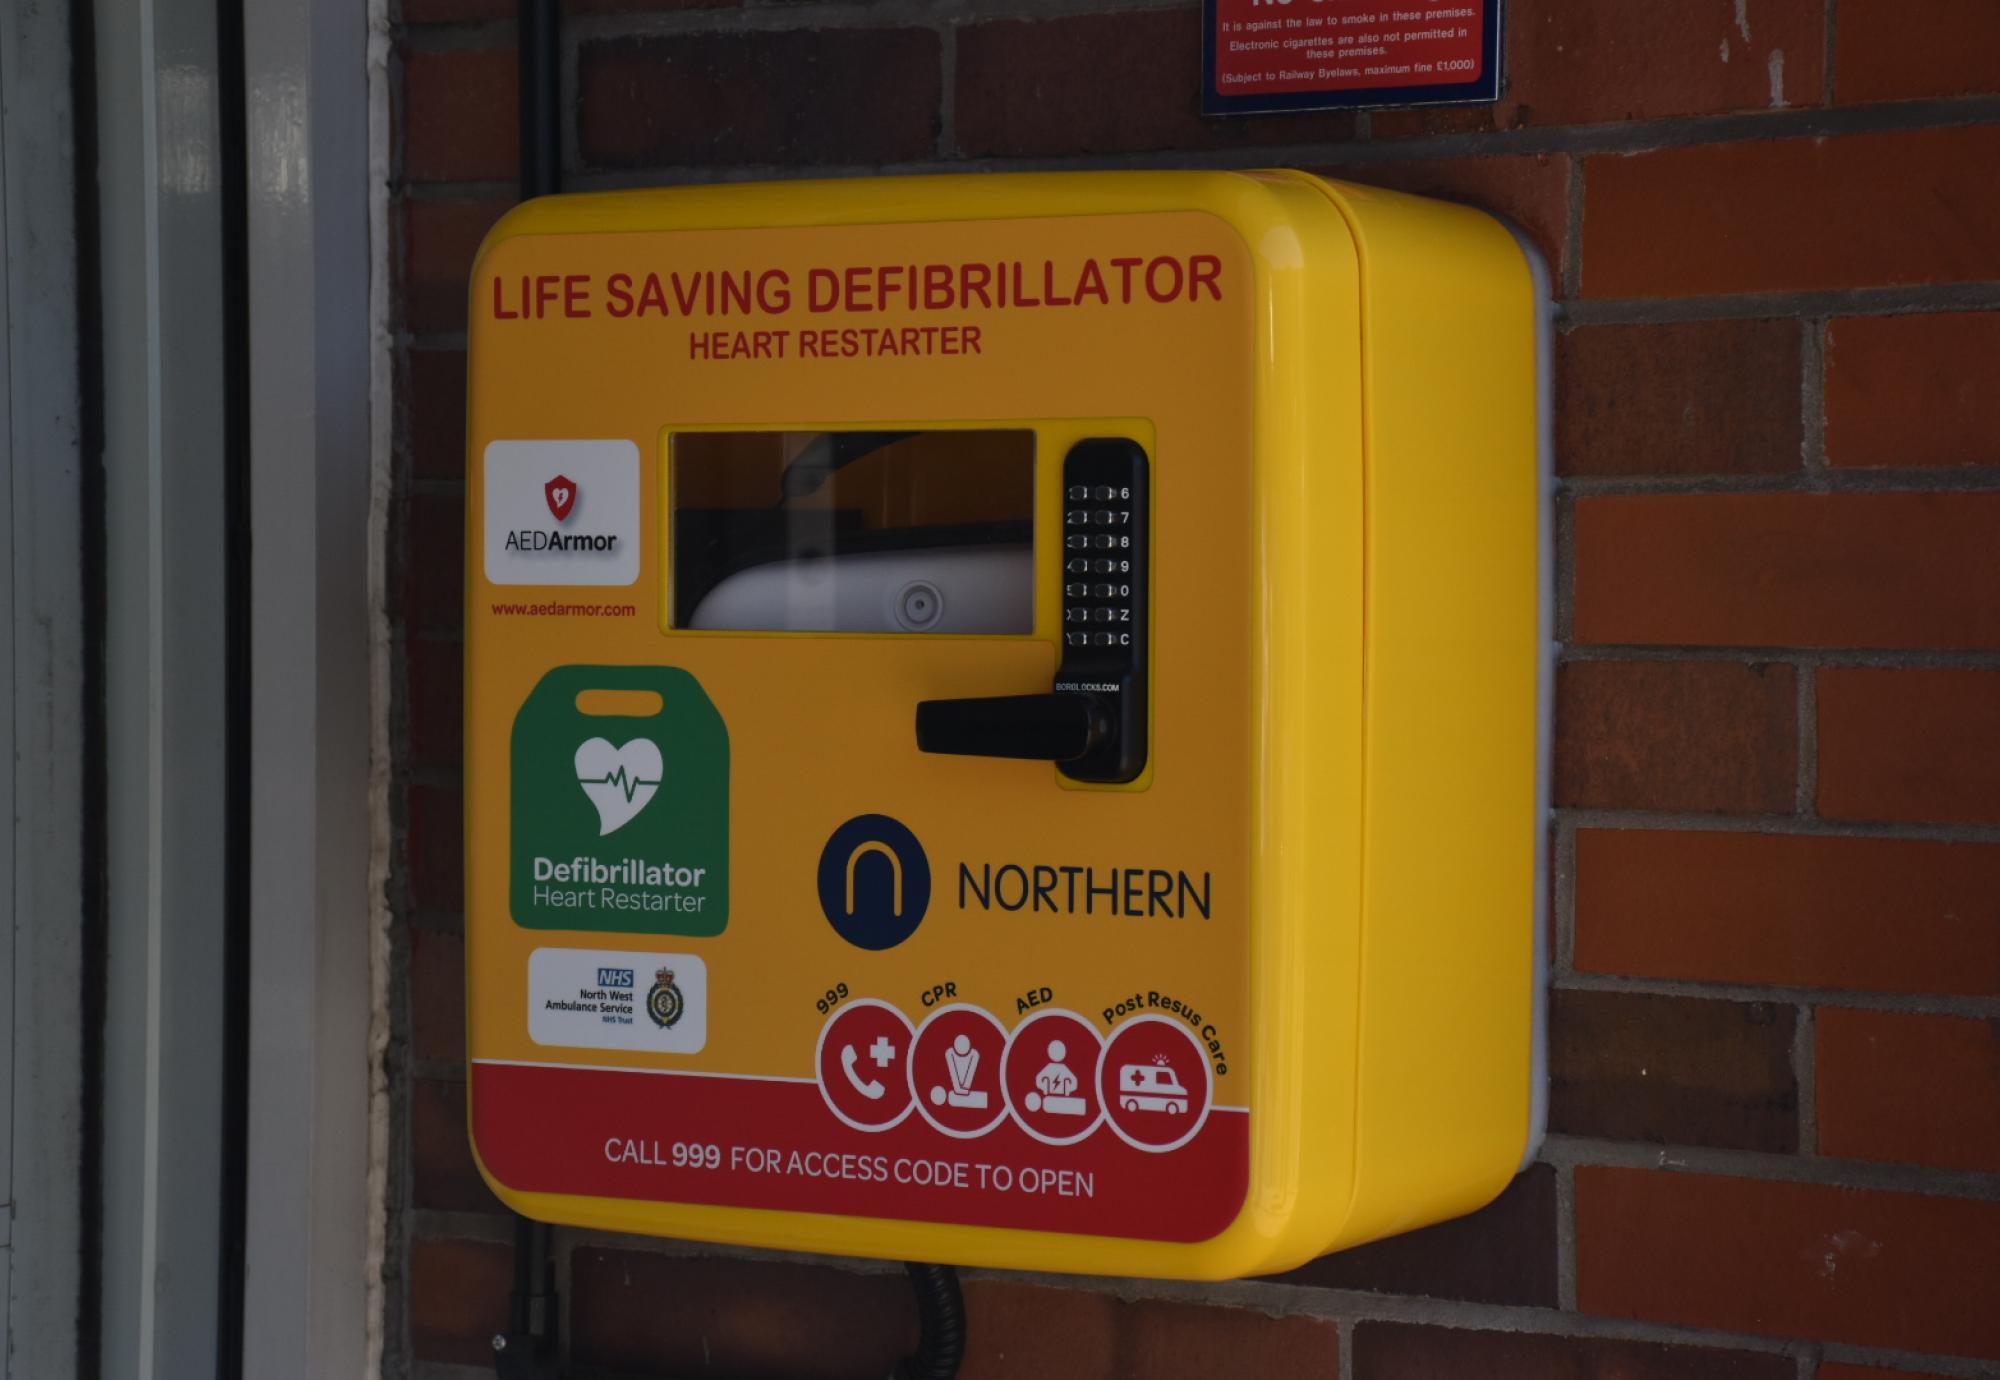 Northern defibrillator, via Northern 